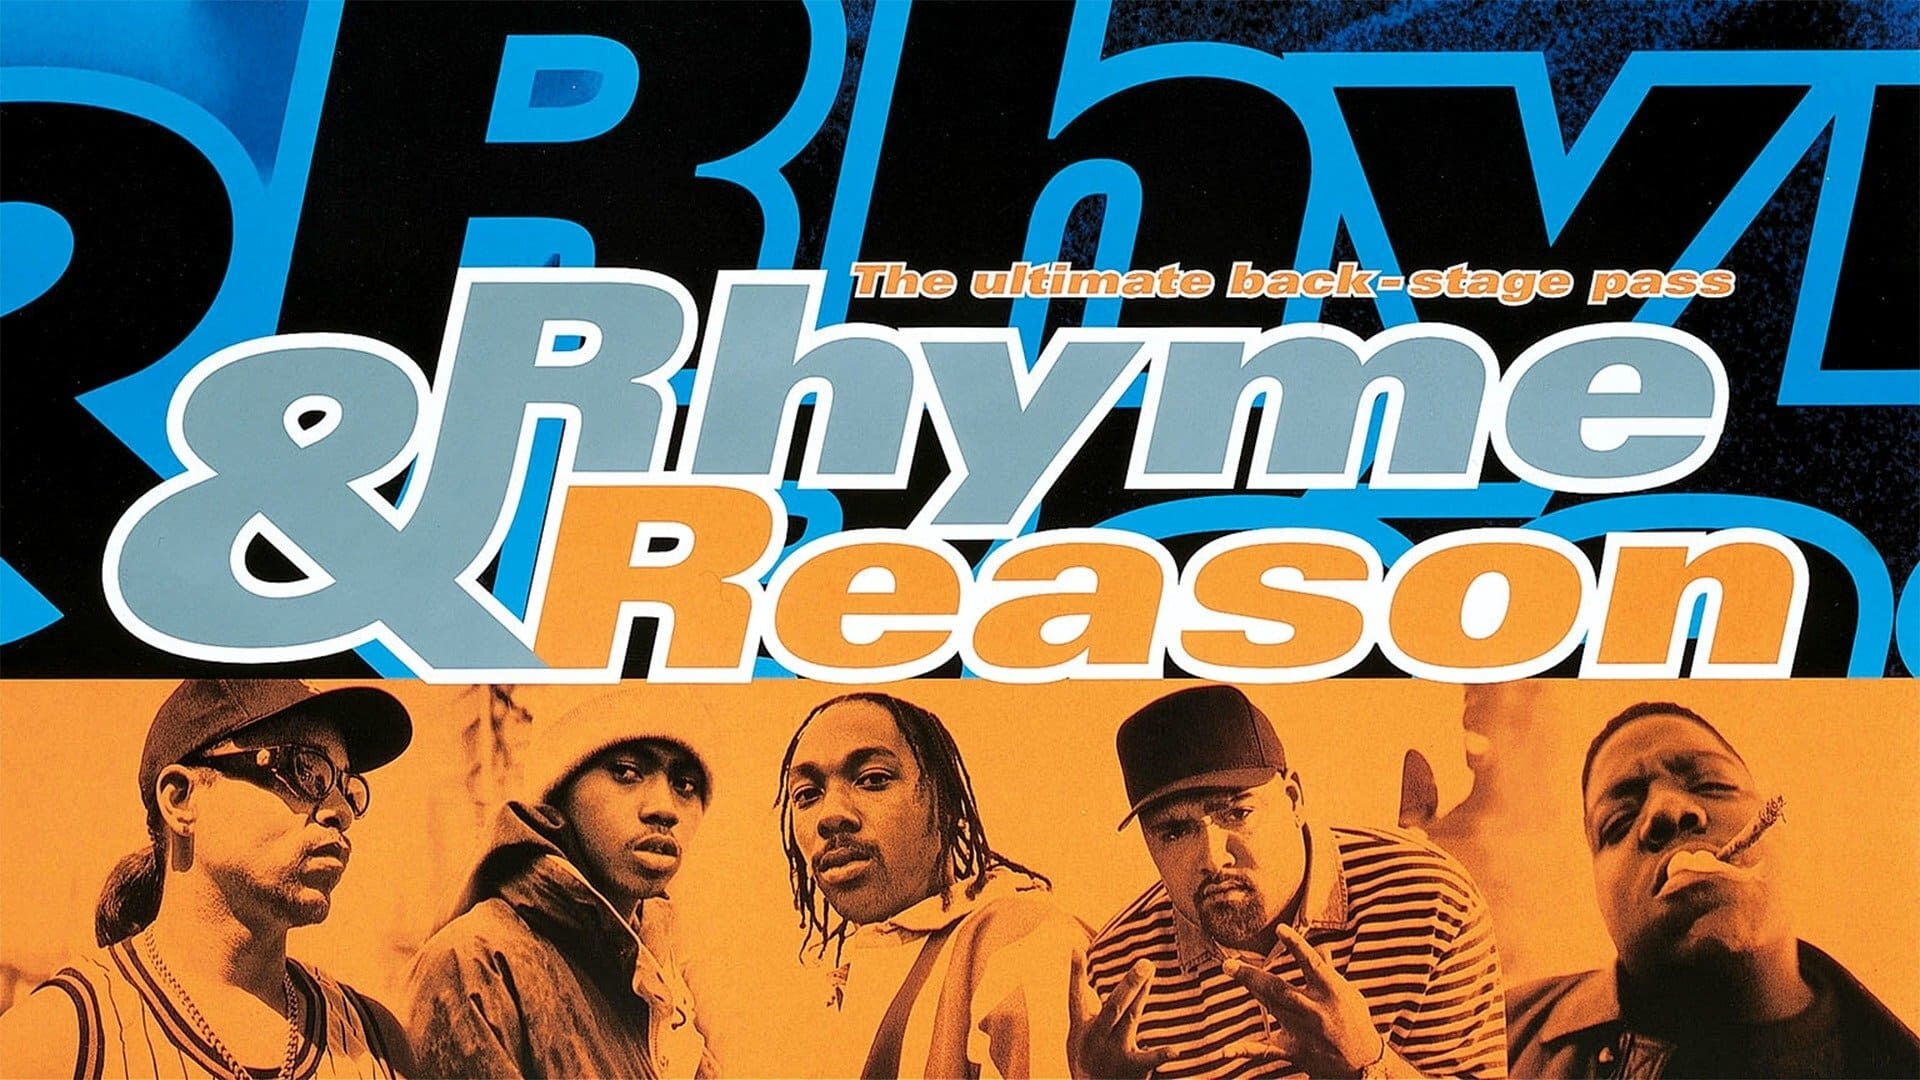 Rhyme & Reason (1997)